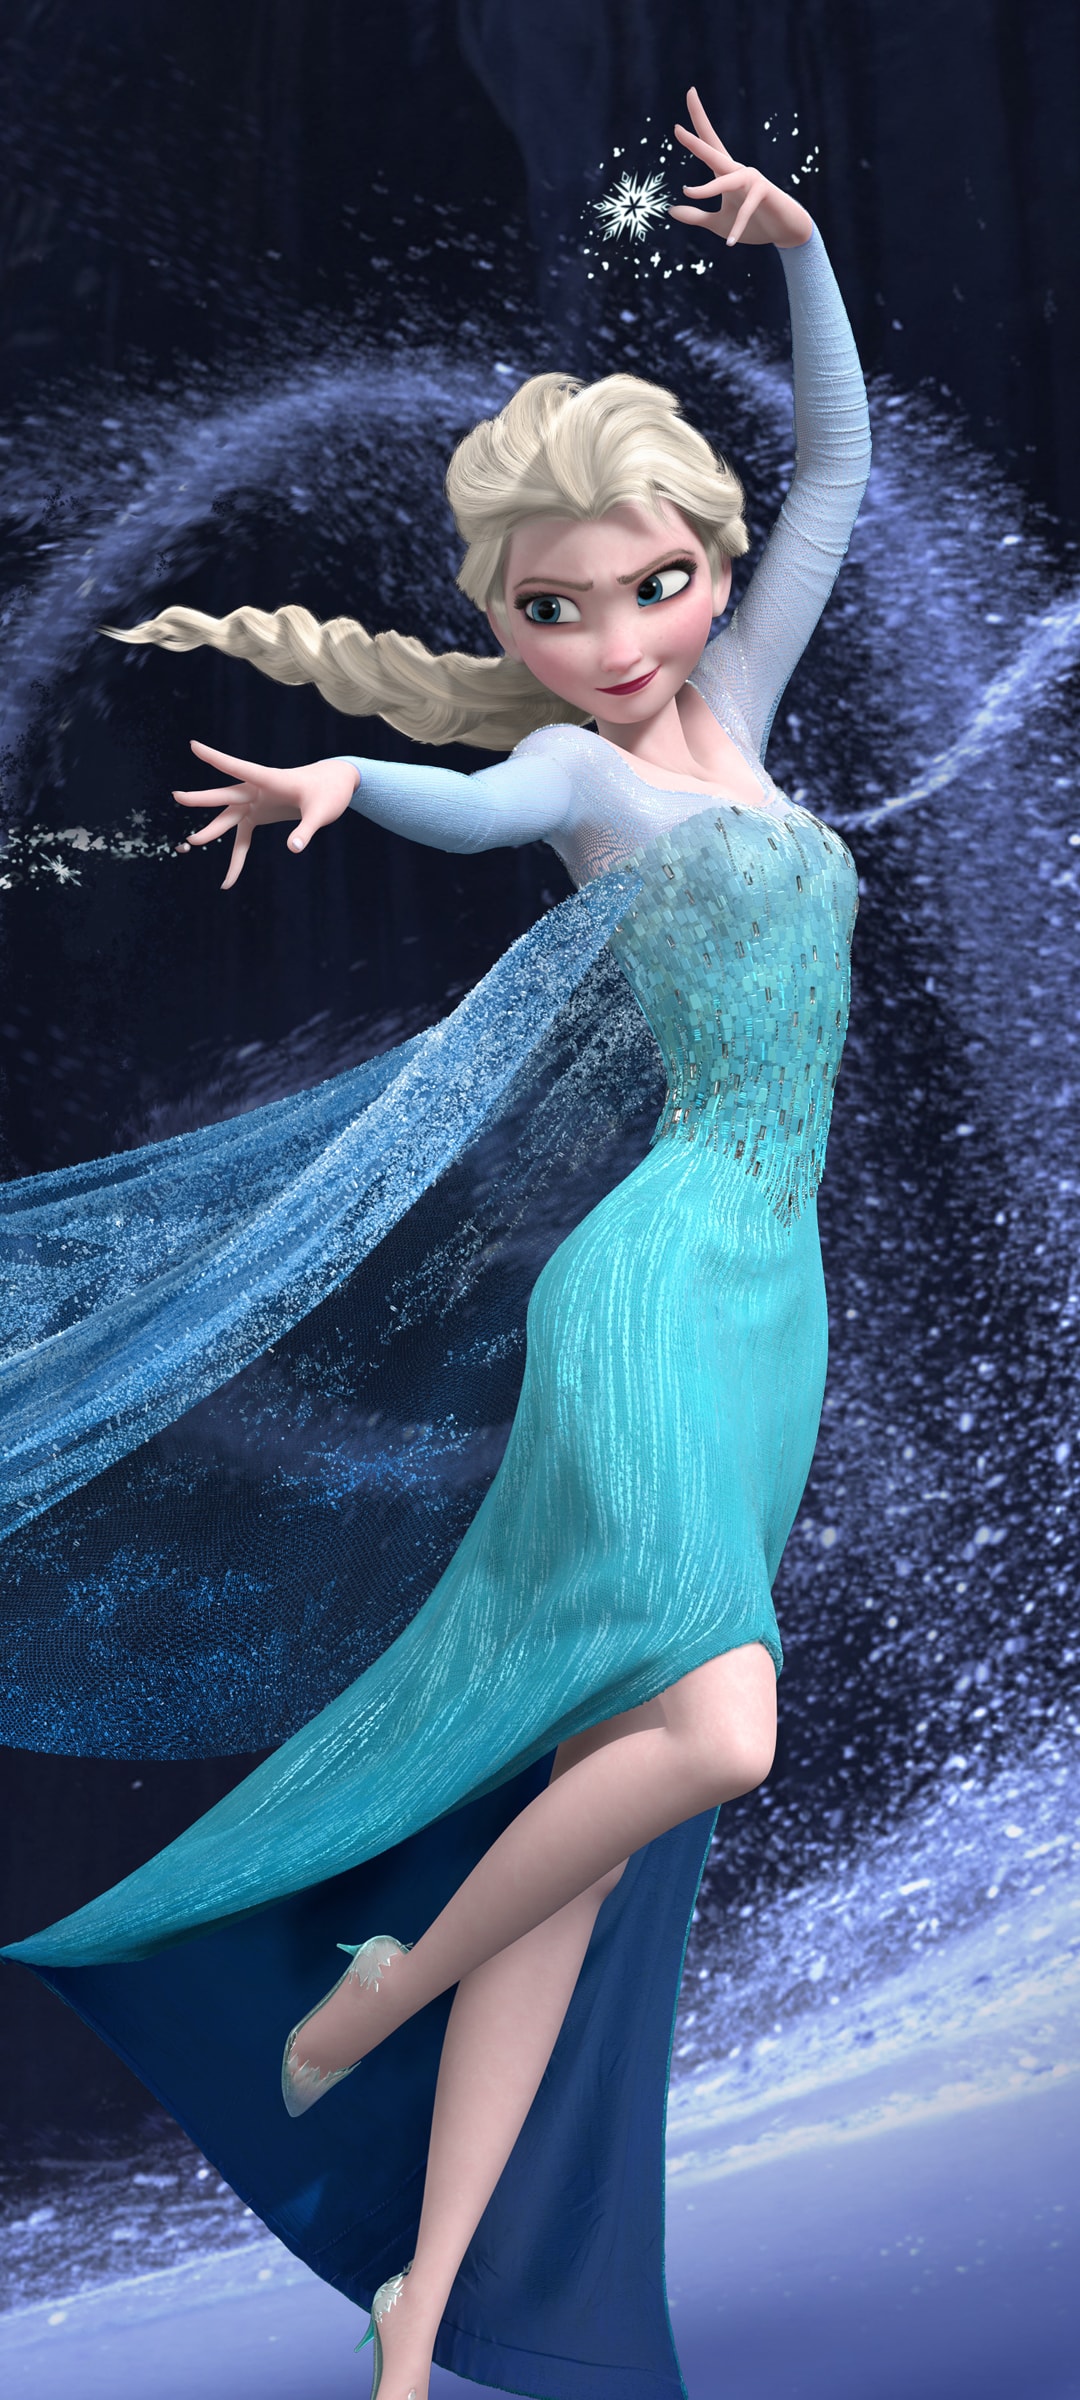 冰雪奇缘之魔法世界的Elsa安娜公主